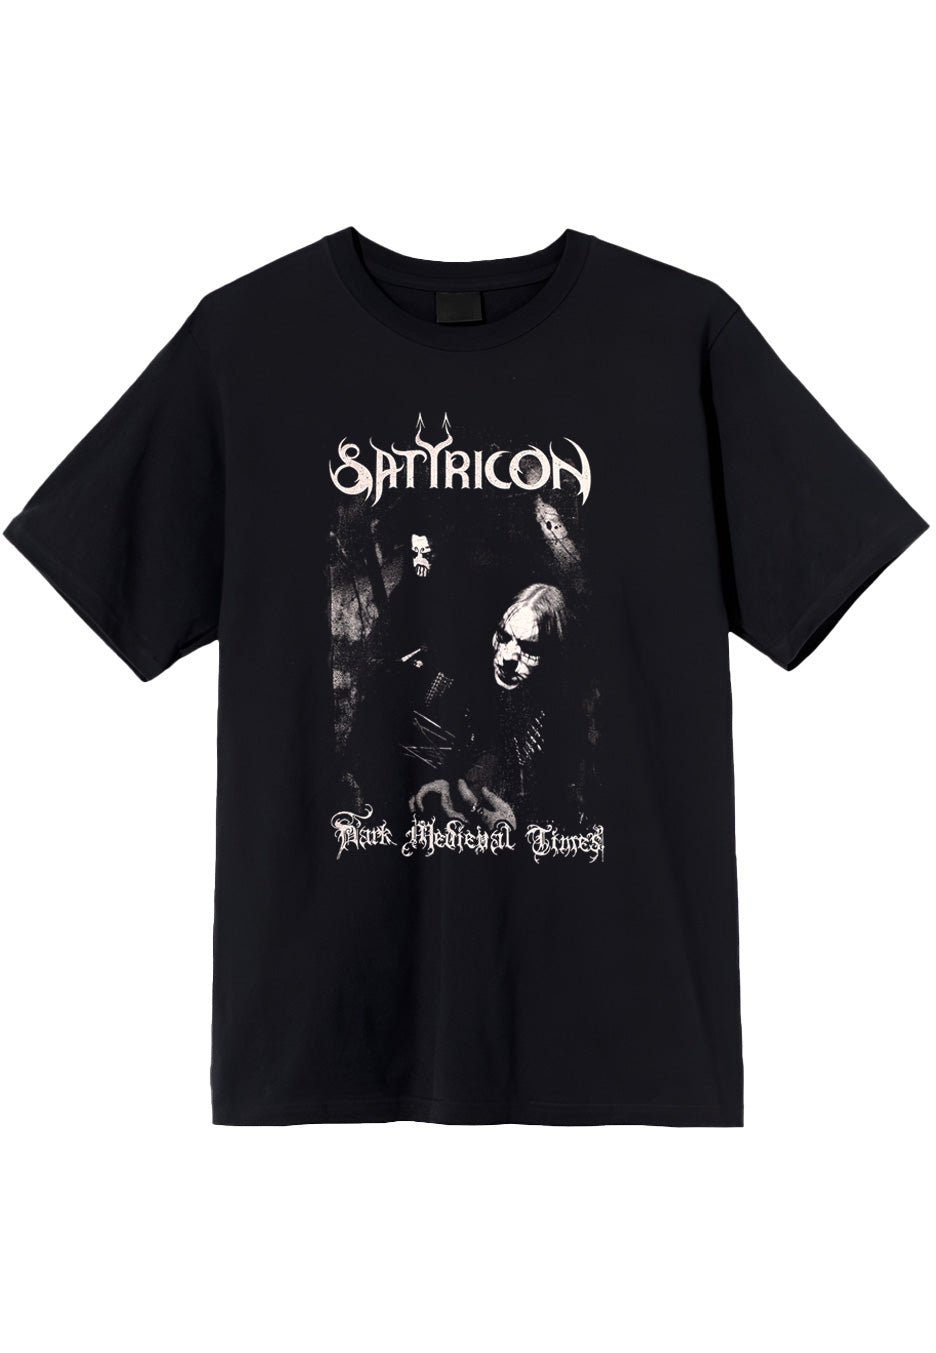 Satyricon - Dark Medieval Times (Reissue) - T-Shirt